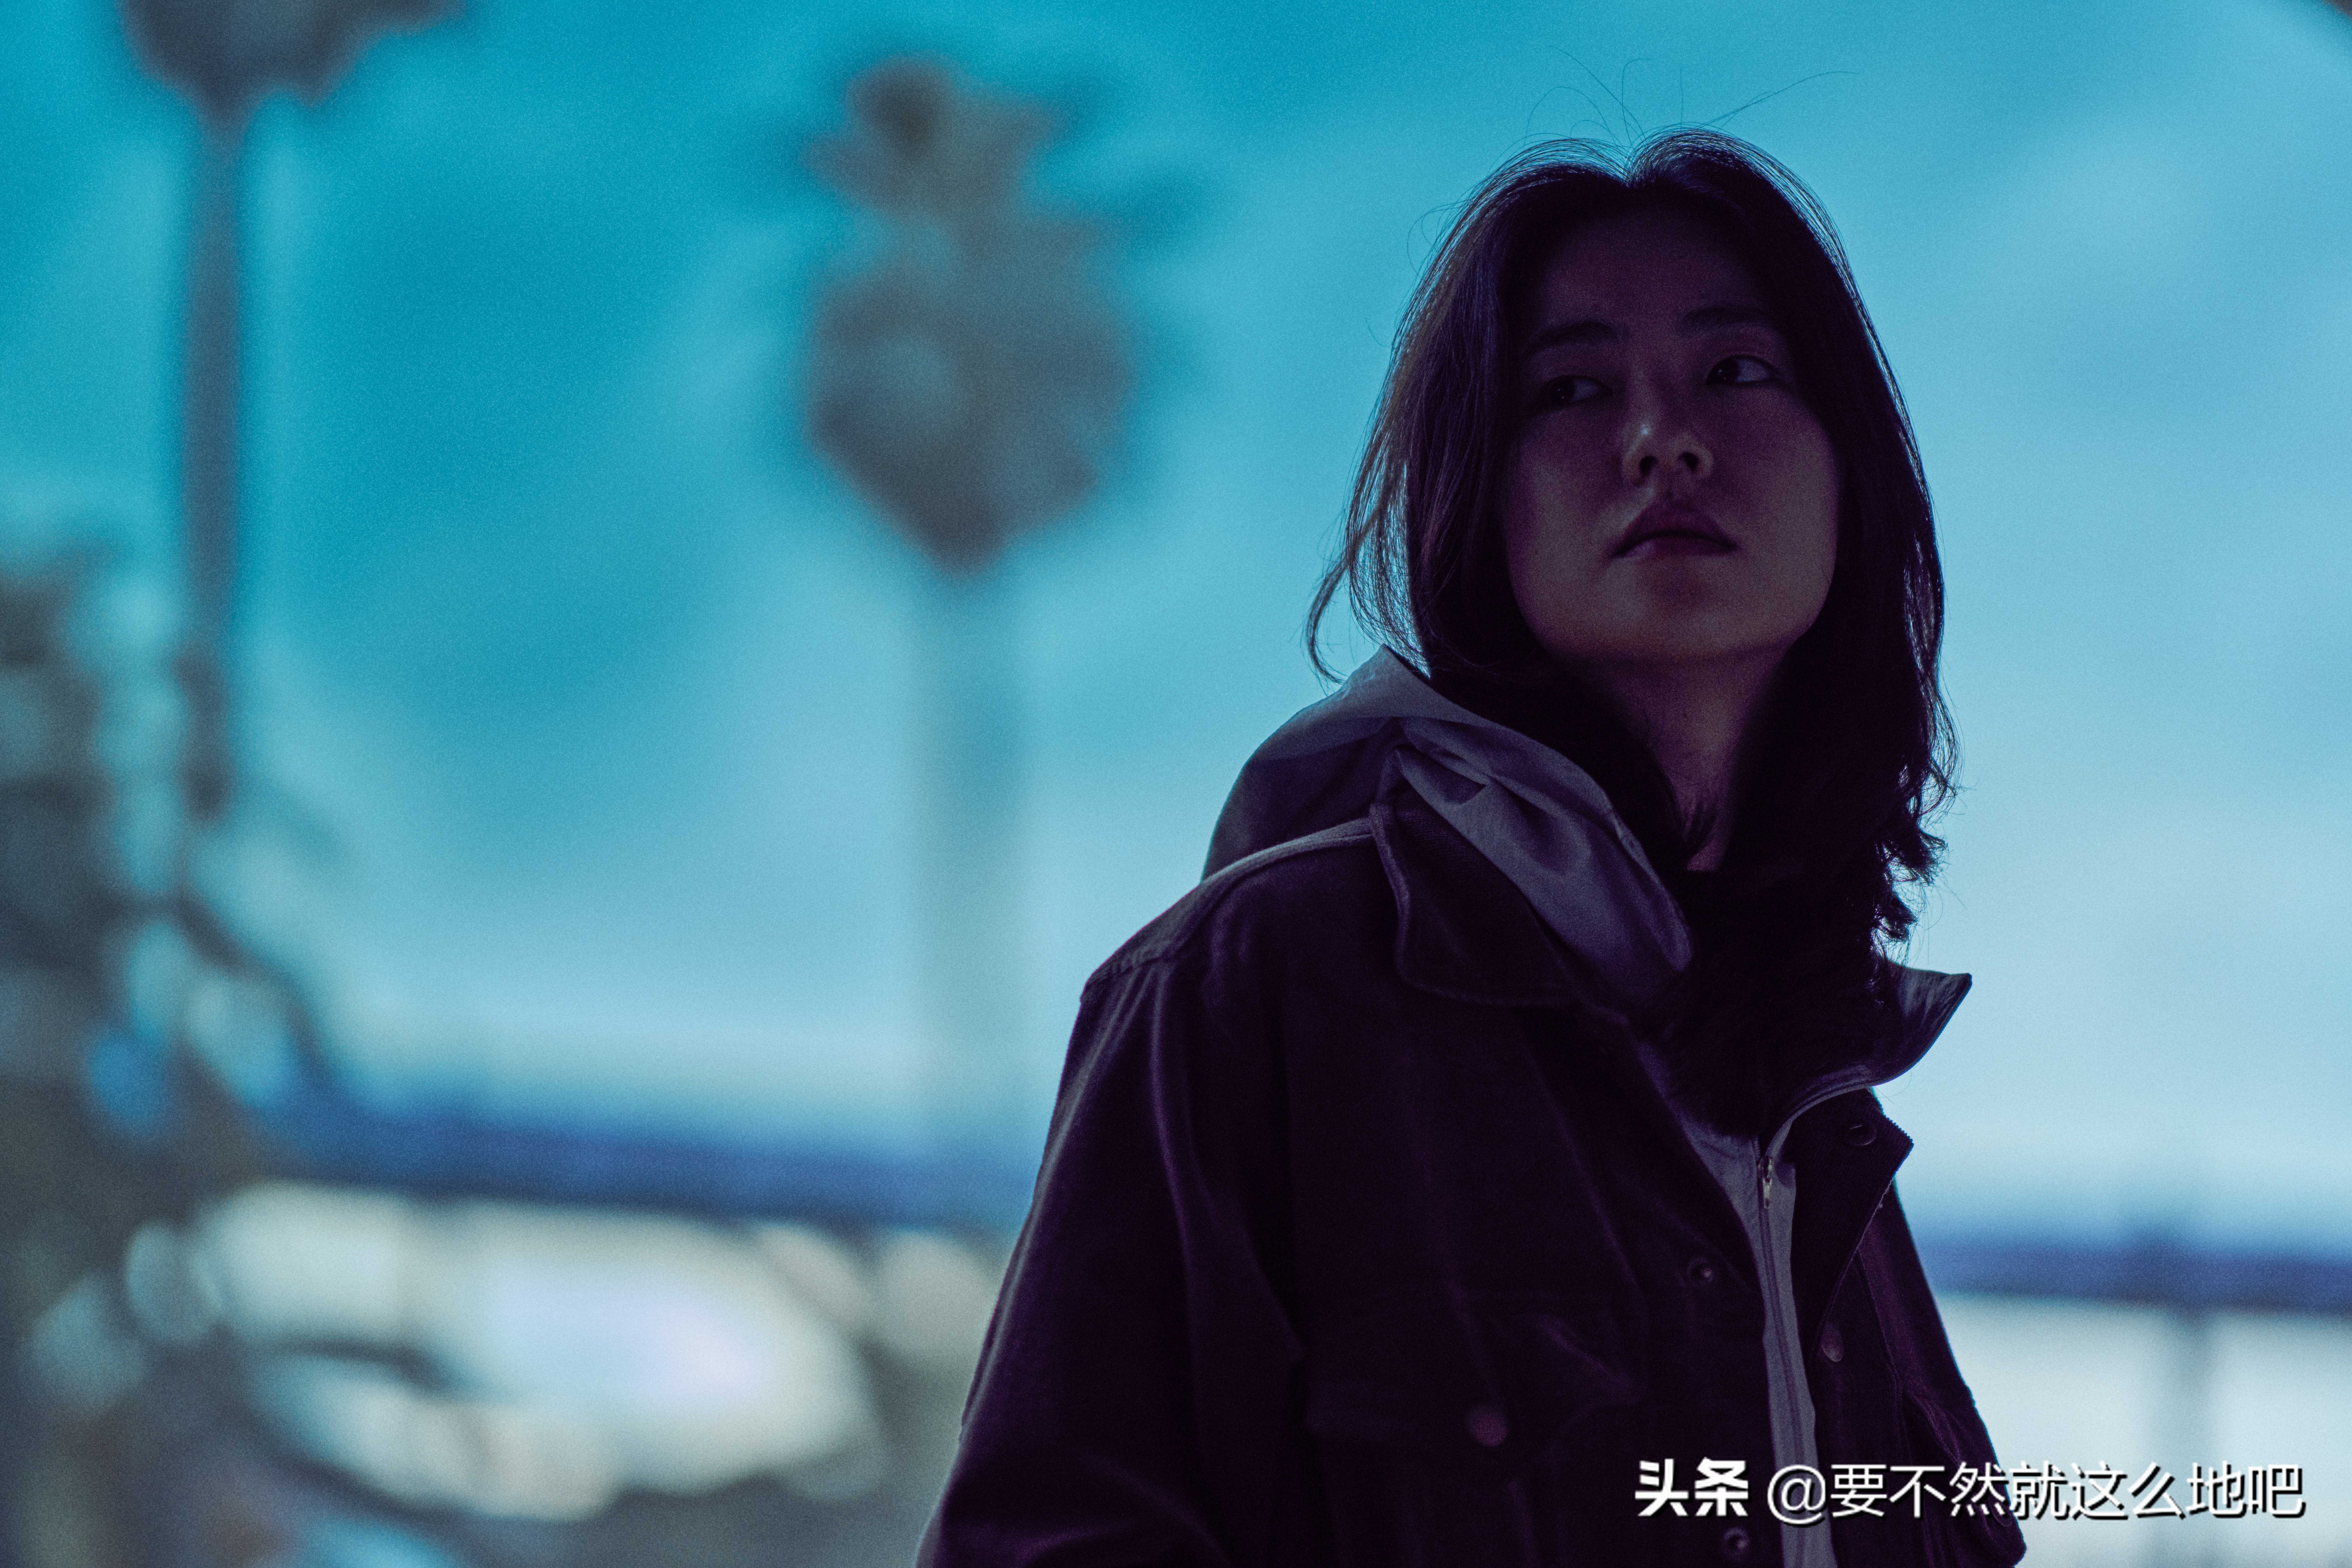 韩国黑帮电影《乐园之夜》：女人上一秒被调戏，下一秒杀人如蚁